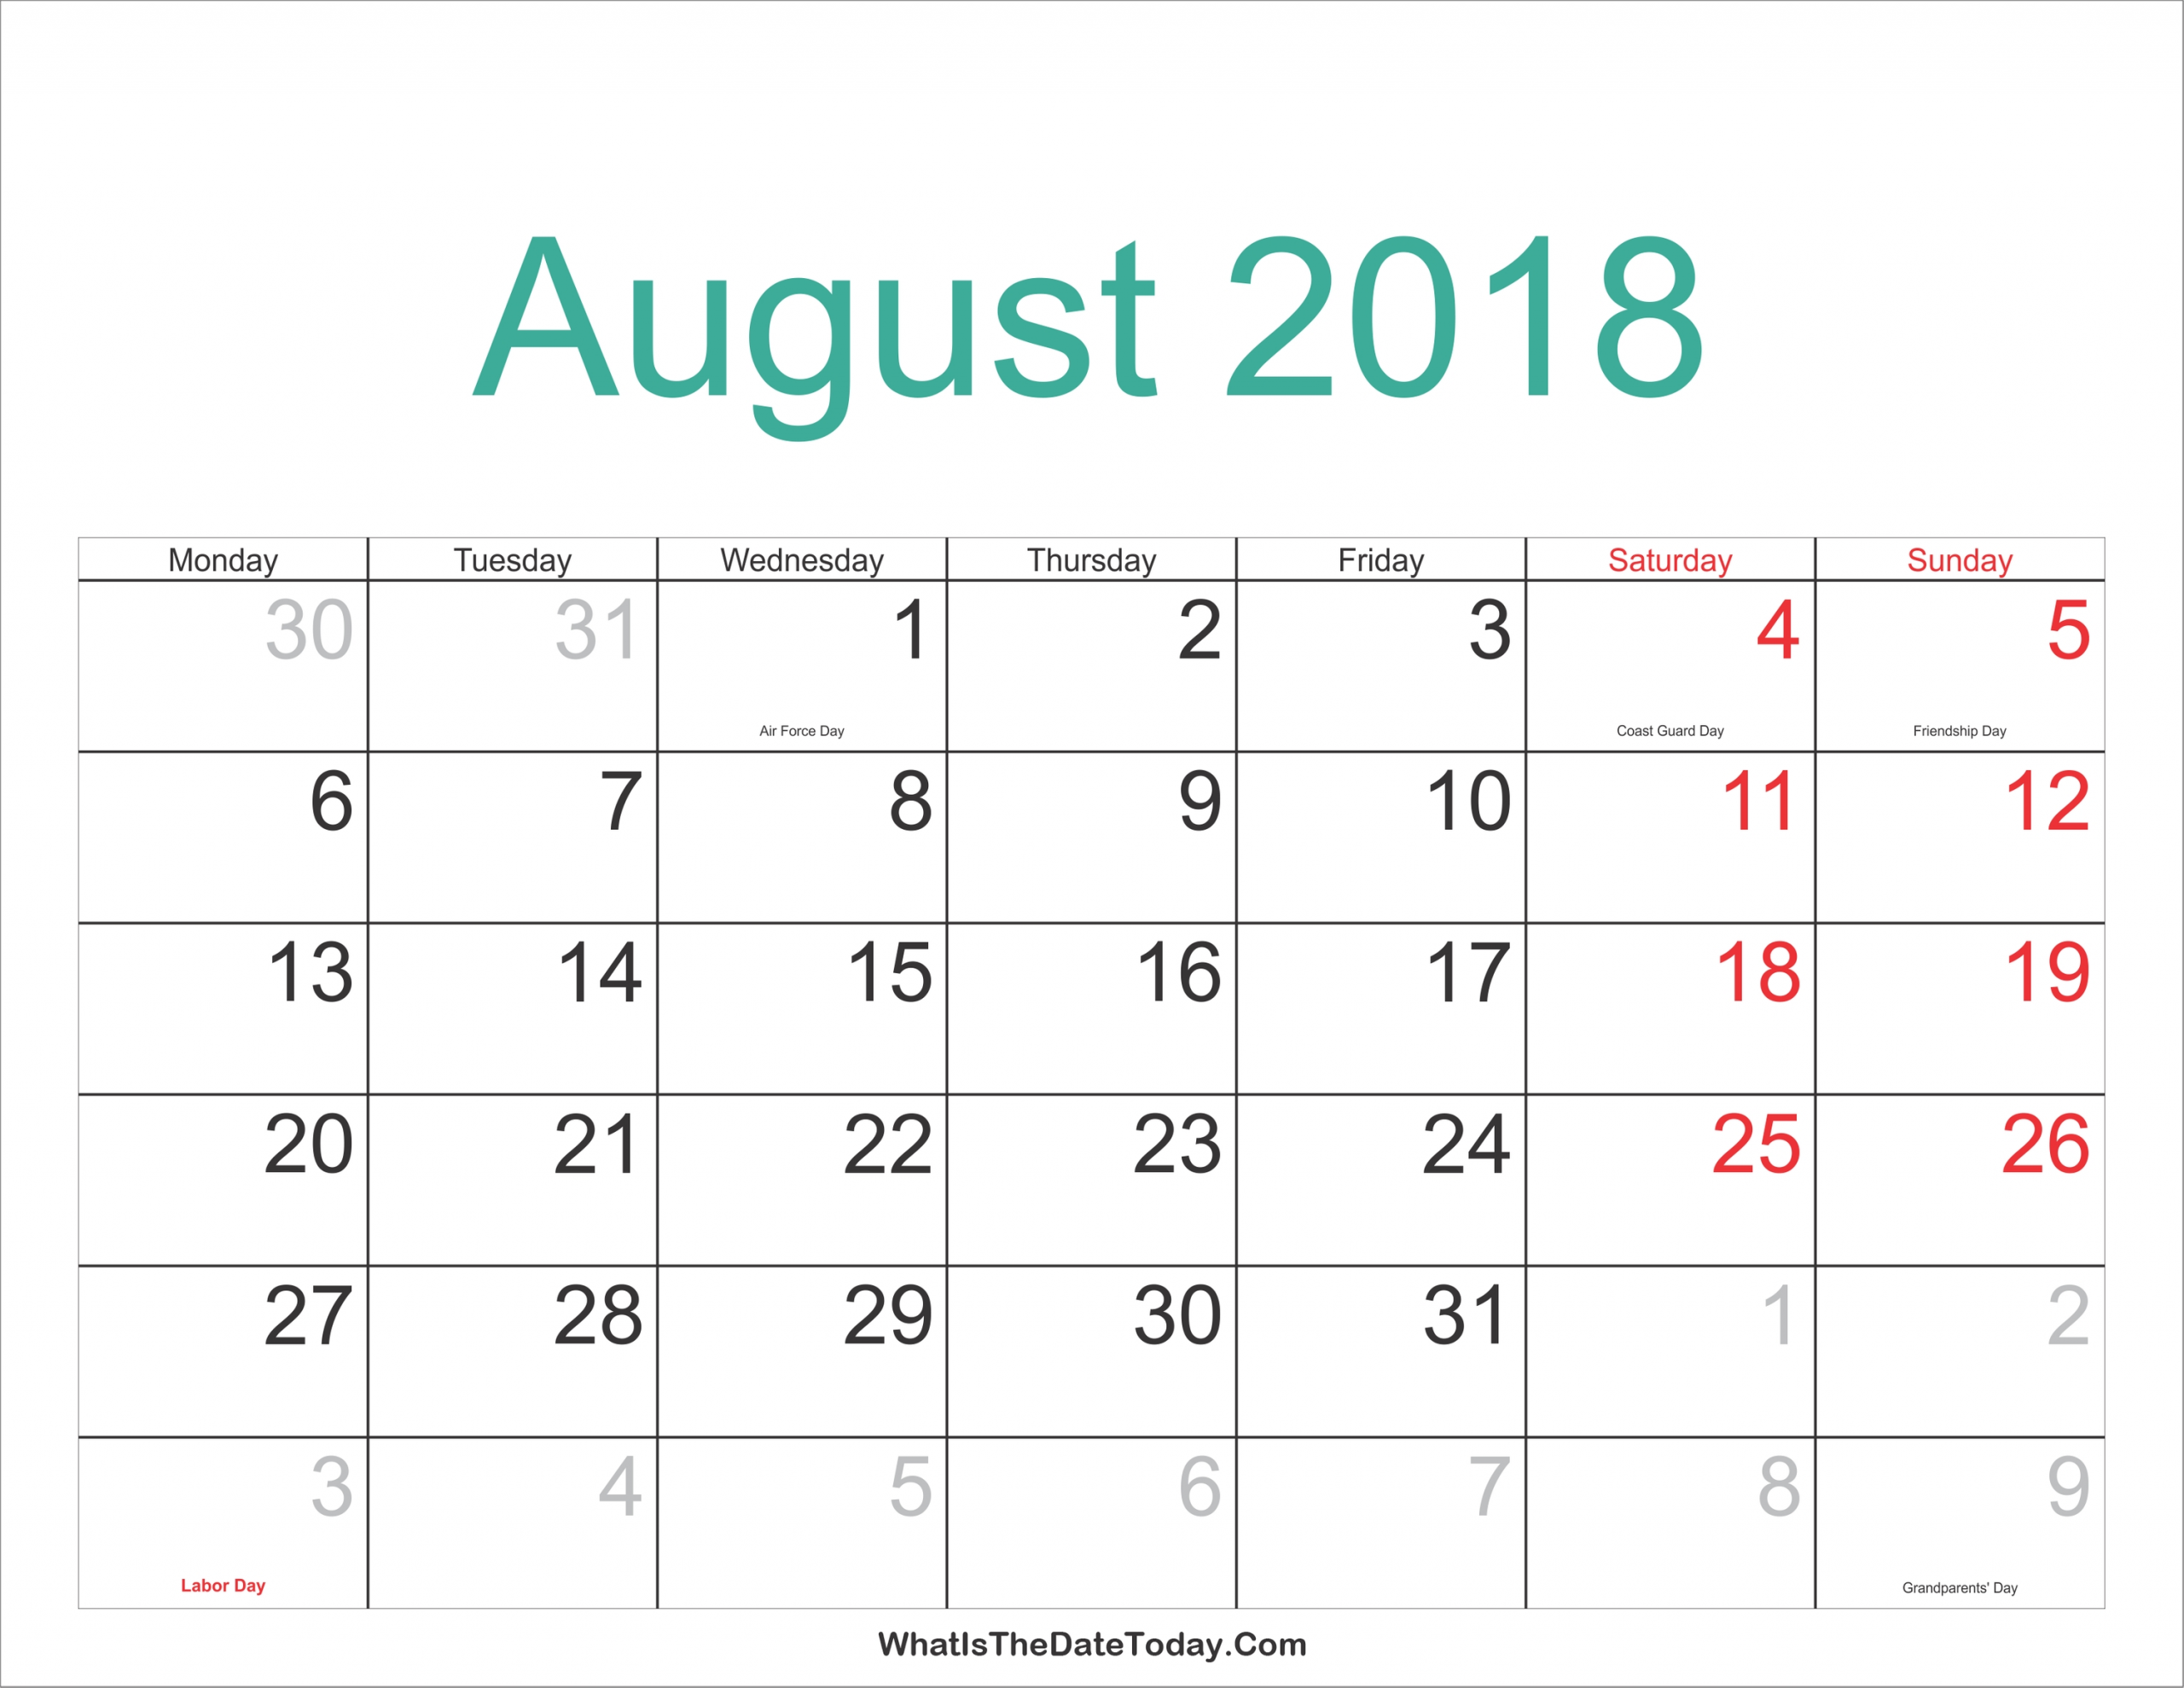 August 2018 Calendar With Holidays Printable Calendar Holidays For August